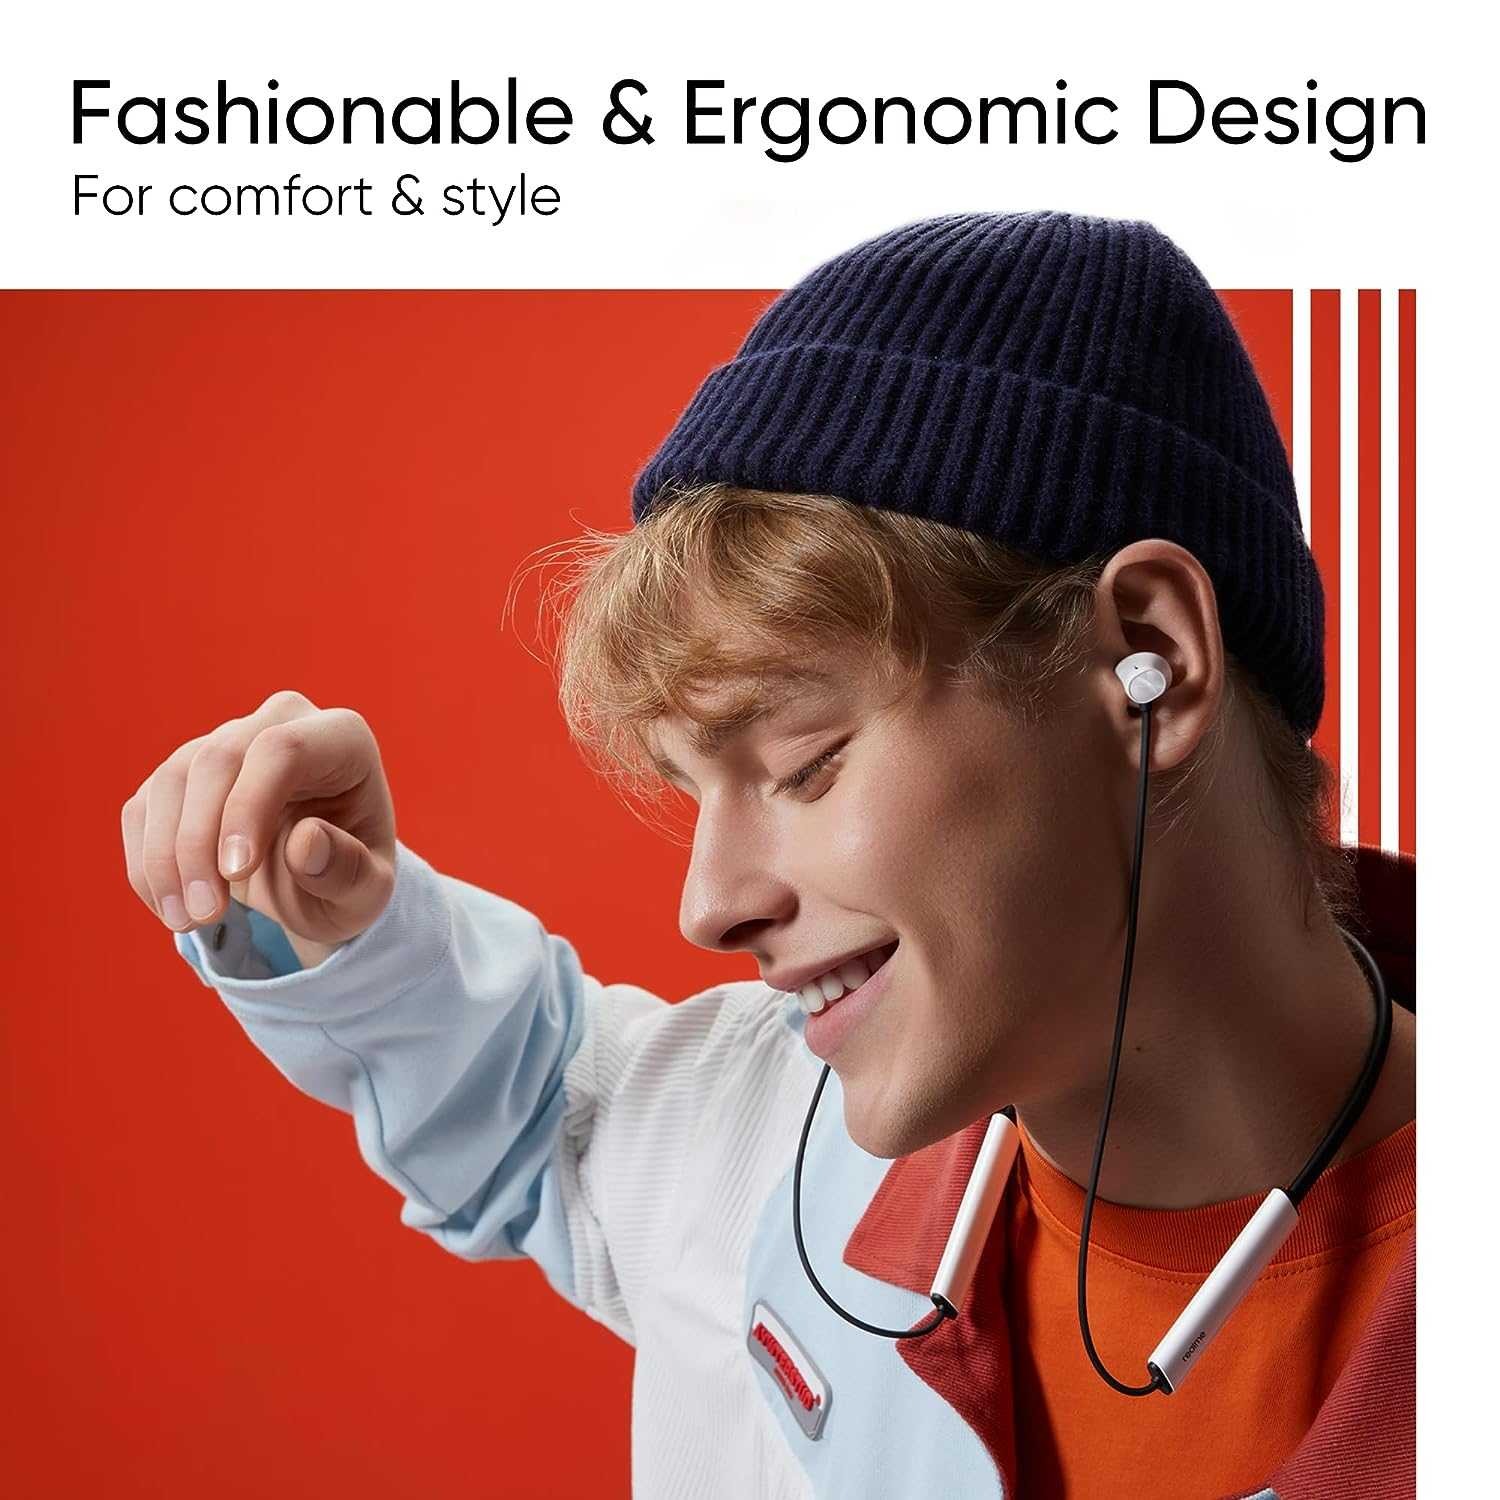 Realme Buds Wireless 3 in-Ear Bluetooth Headphones